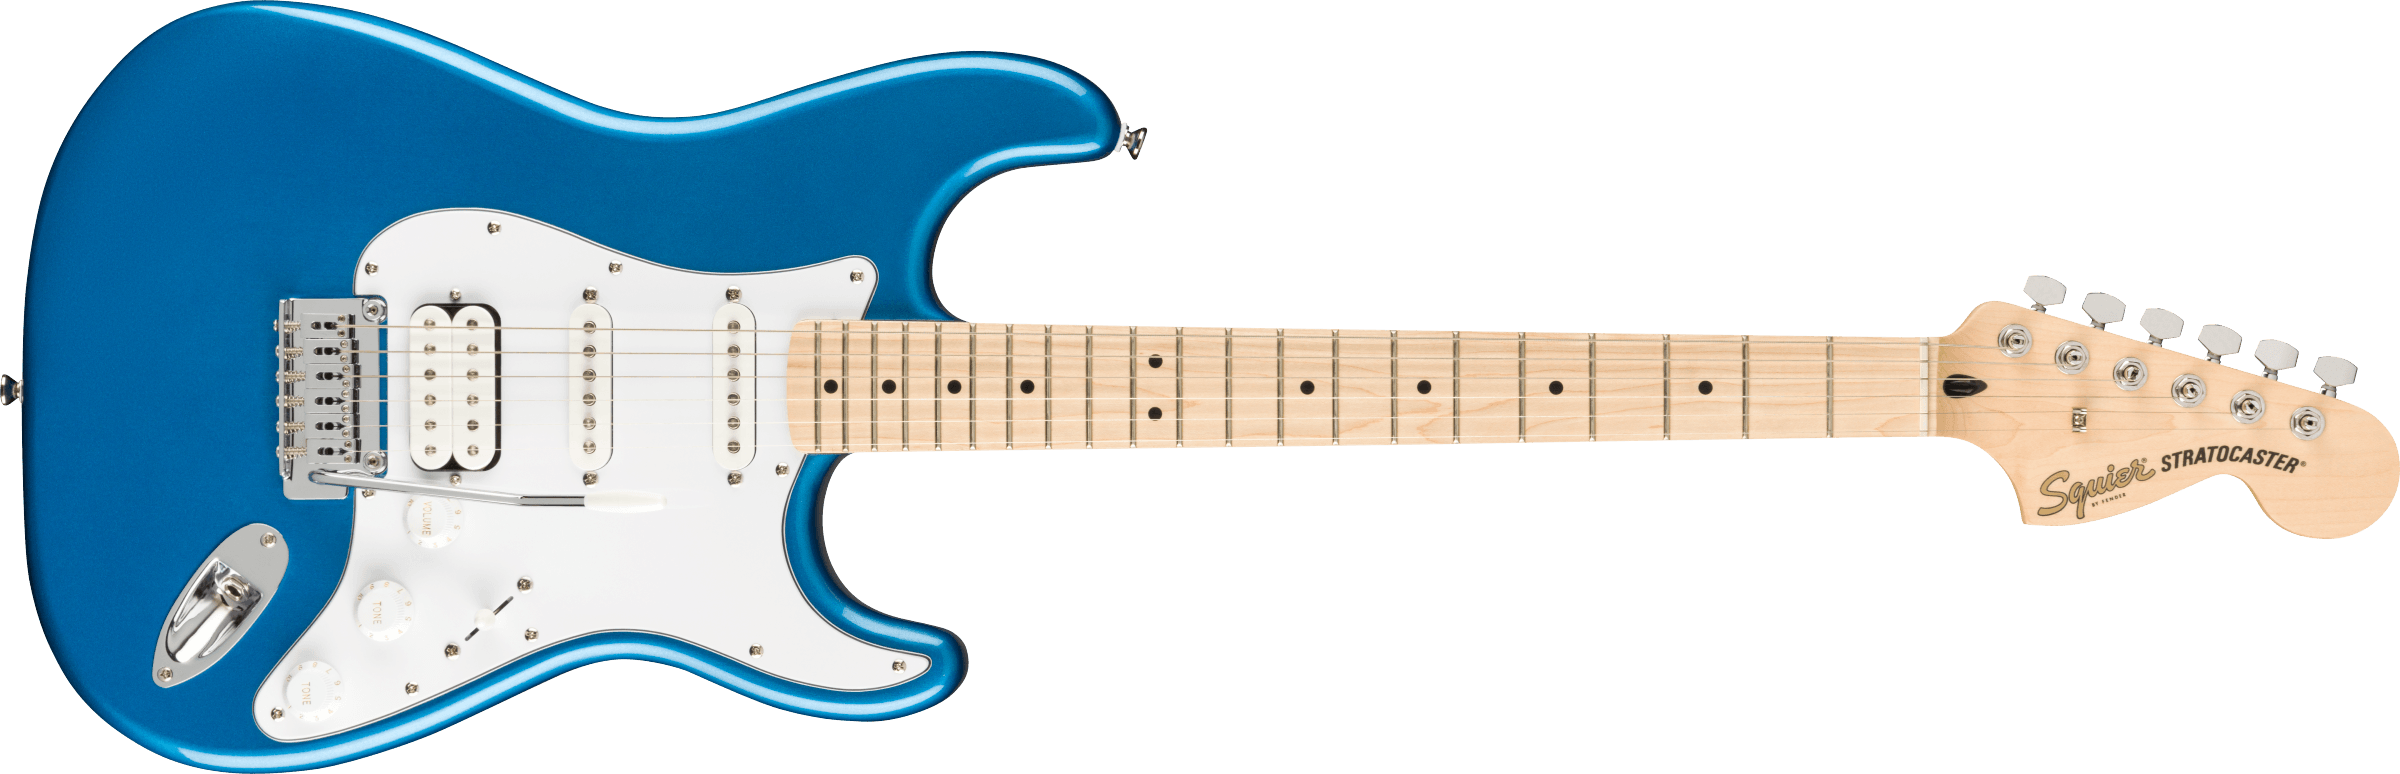 Squier Strat Affinity Hss Pack +fender Frontman 15g 2021 Trem Mn - Lake Placid Blue - Elektrische gitaar set - Variation 1